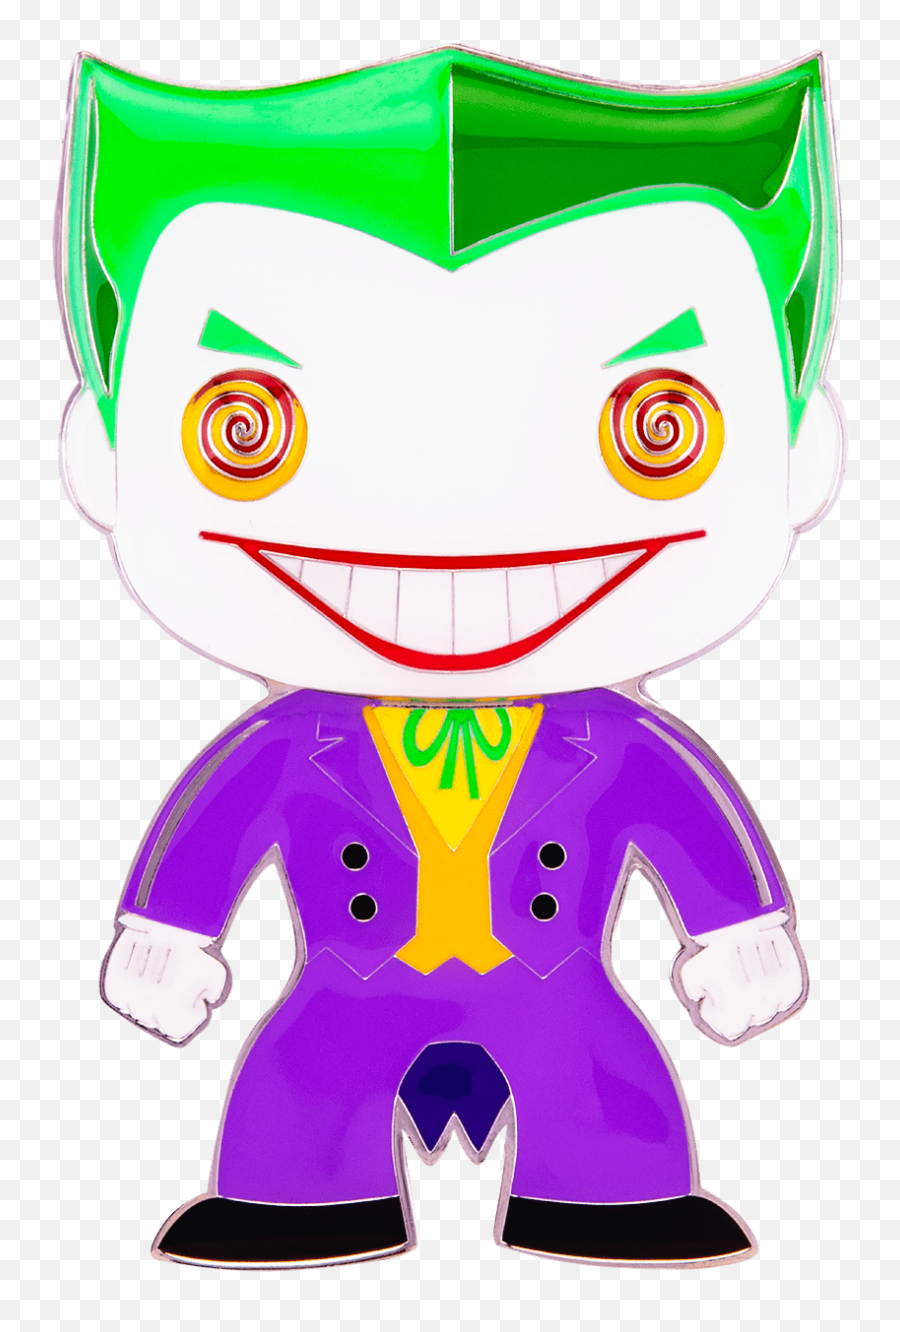 Funko Pop Batman - Joker 4u201d Enamel Pin Funko Pop Pins Png,Joker Smile Png